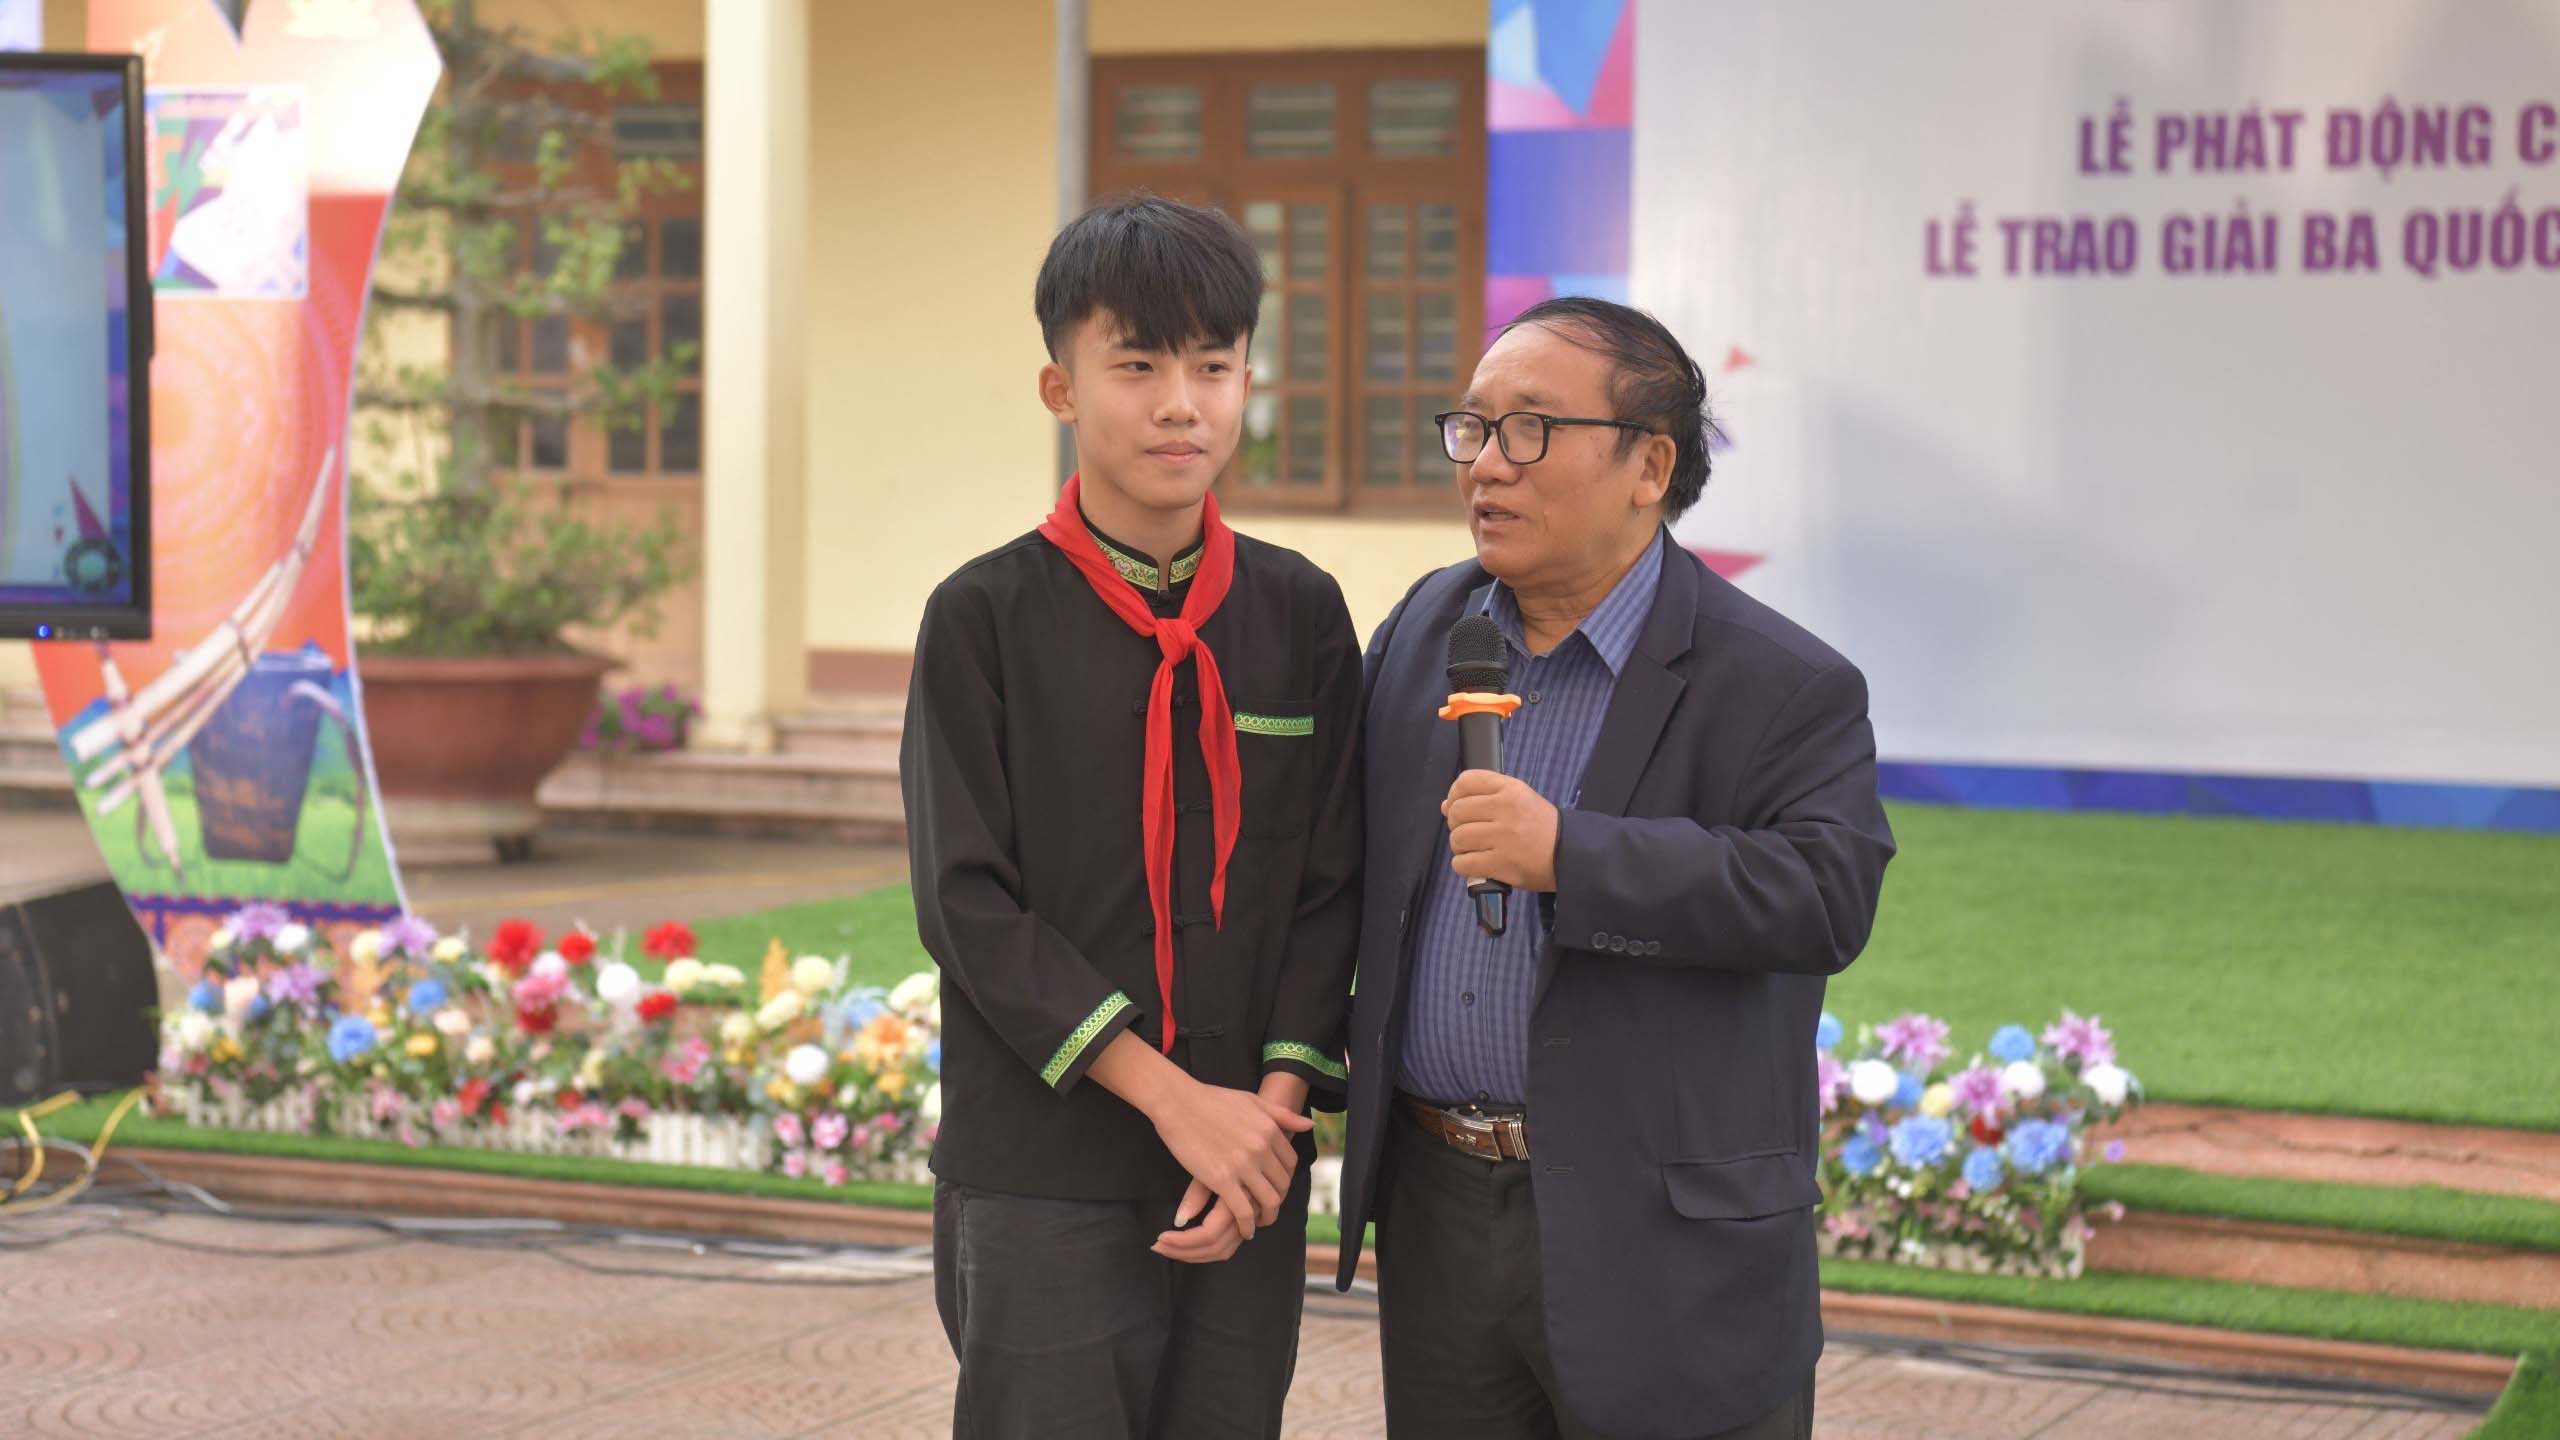 Nhà thơ Trần Đăng Khoa, Phó Chủ tịch Hội Nhà văn Việt Nam, Trưởng Ban Giám khảo cuộc thi giao lưu và chia sẻ với các bạn học sinh tại Lễ Phát động cuộc thi Viết thư quốc tế UPU lần thứ